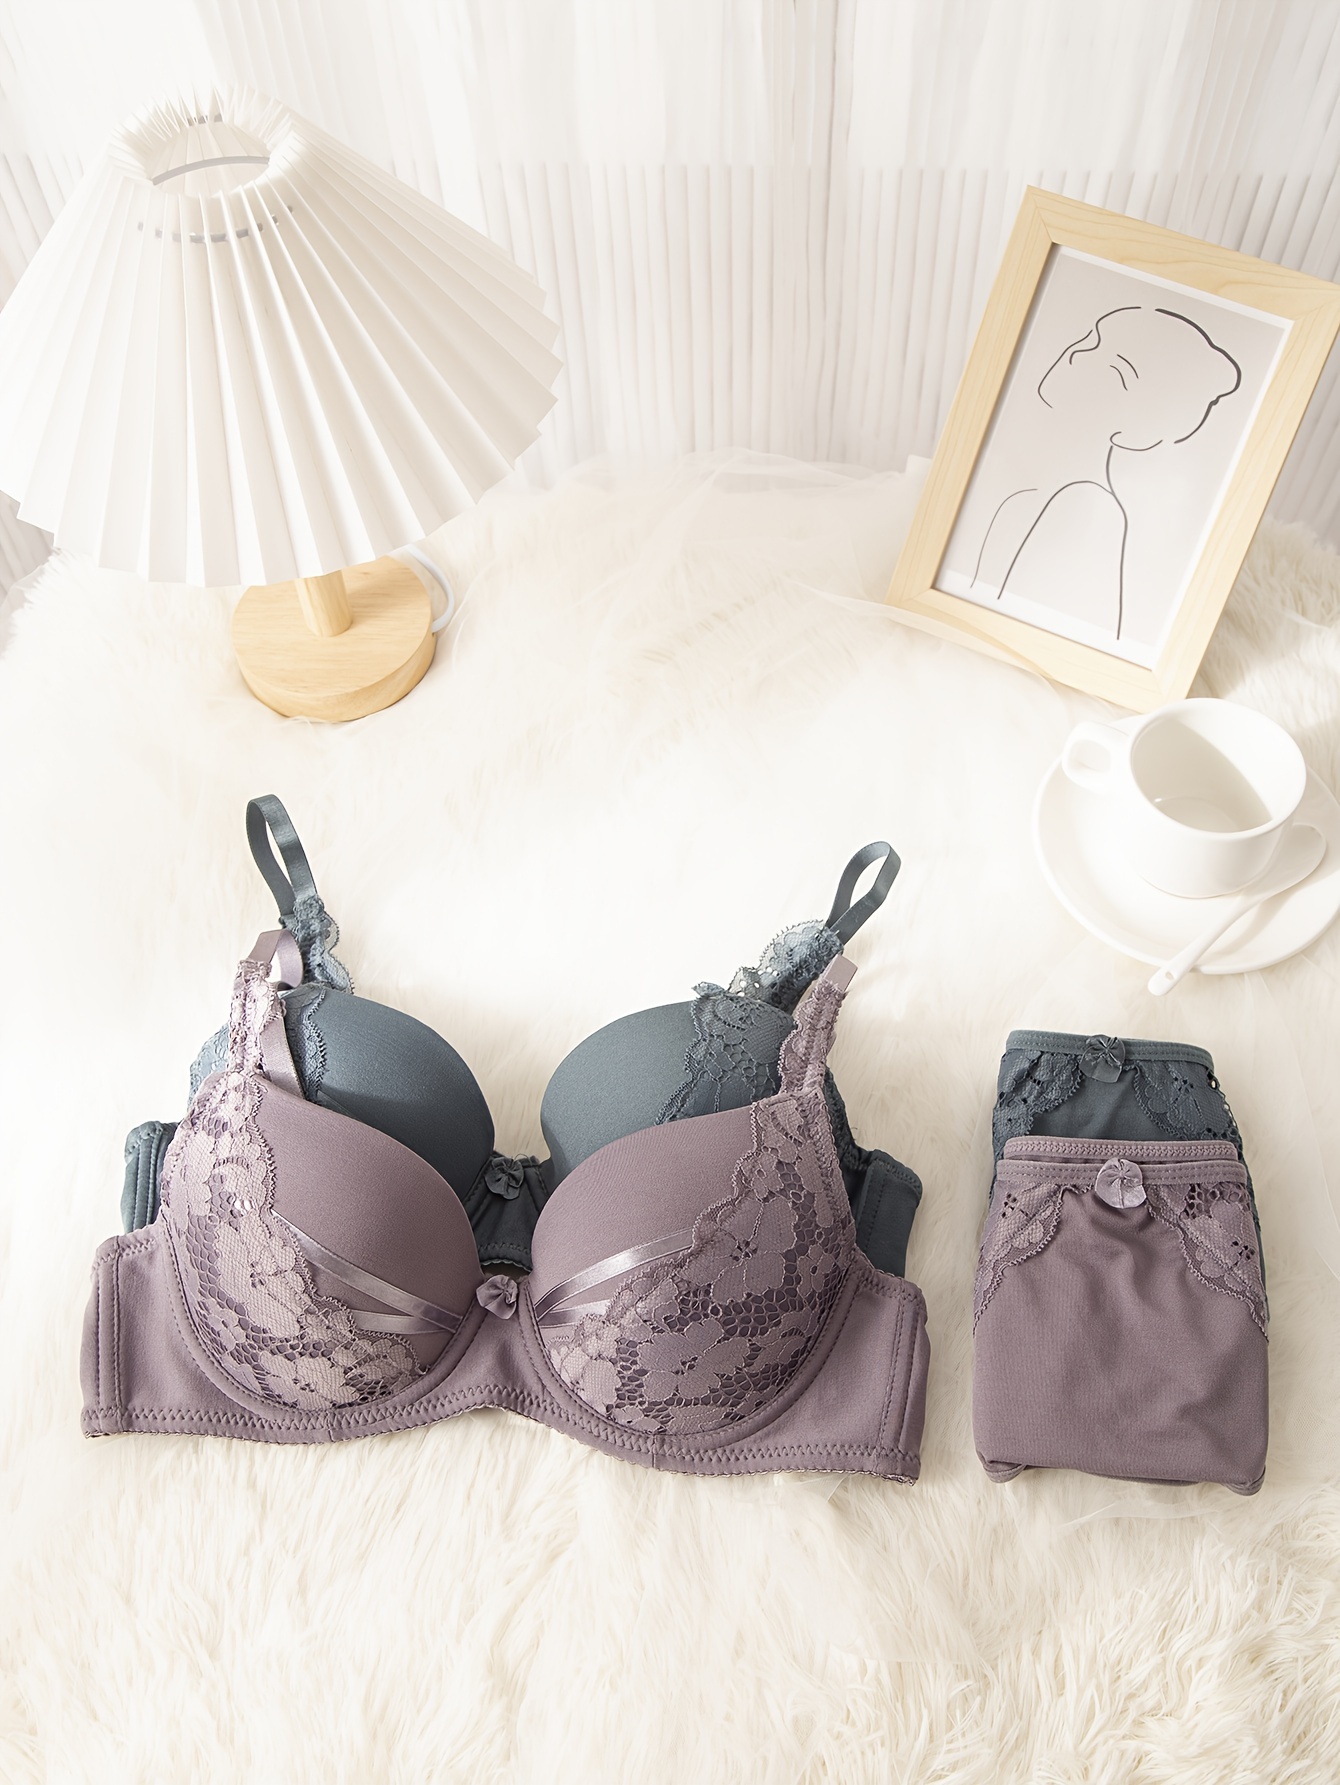 2 Sets Contrast Lace Bra & Panties, Push Up Bra & Elastic Panties Lingerie  Set, Women's Lingerie & Underwear